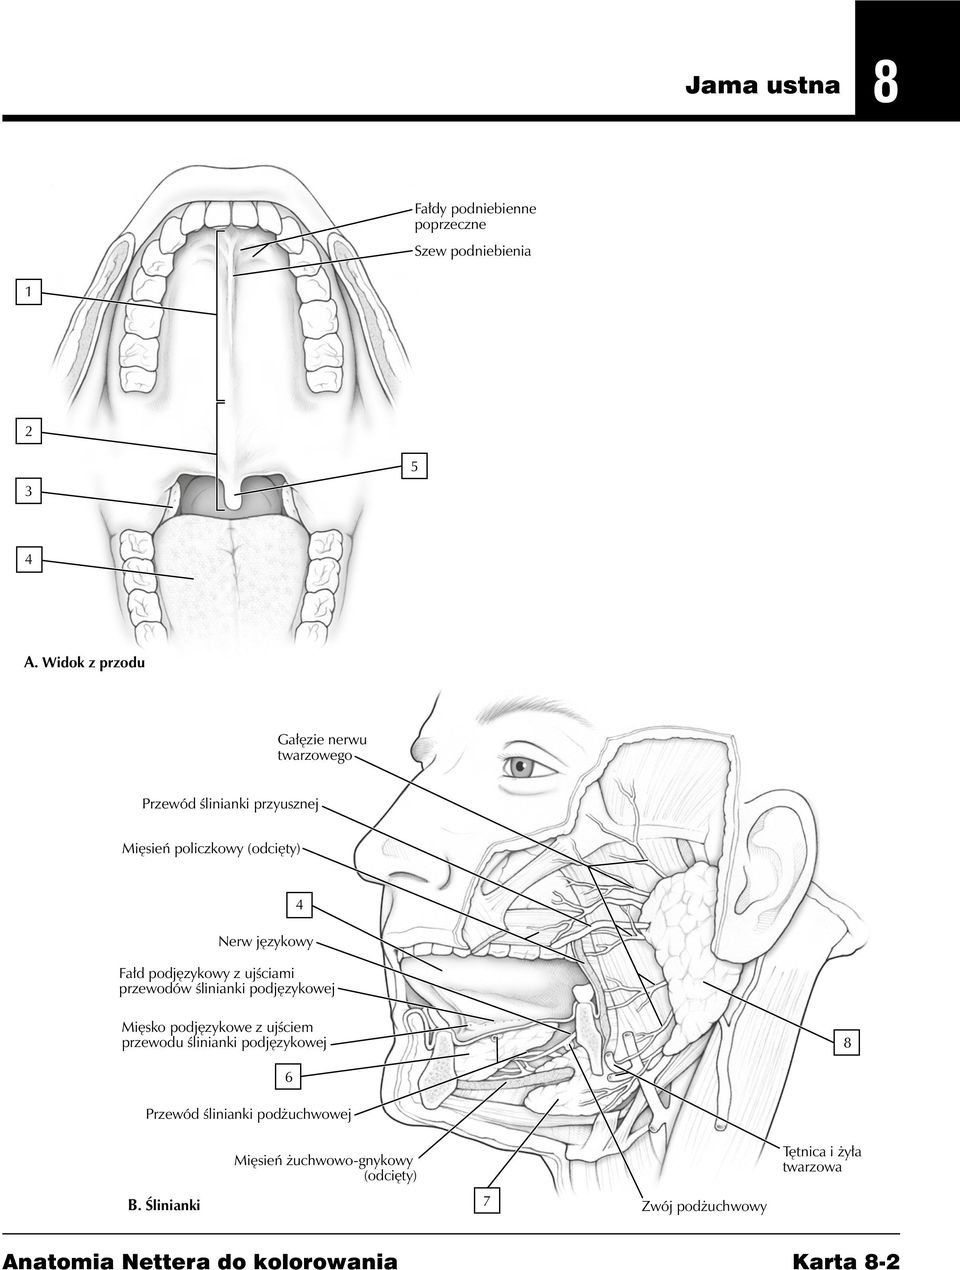 Fałd podjęzykowy z ujściami przewodów ślinianki podjęzykowej Mięsko podjęzykowe z ujściem przewodu ślinianki